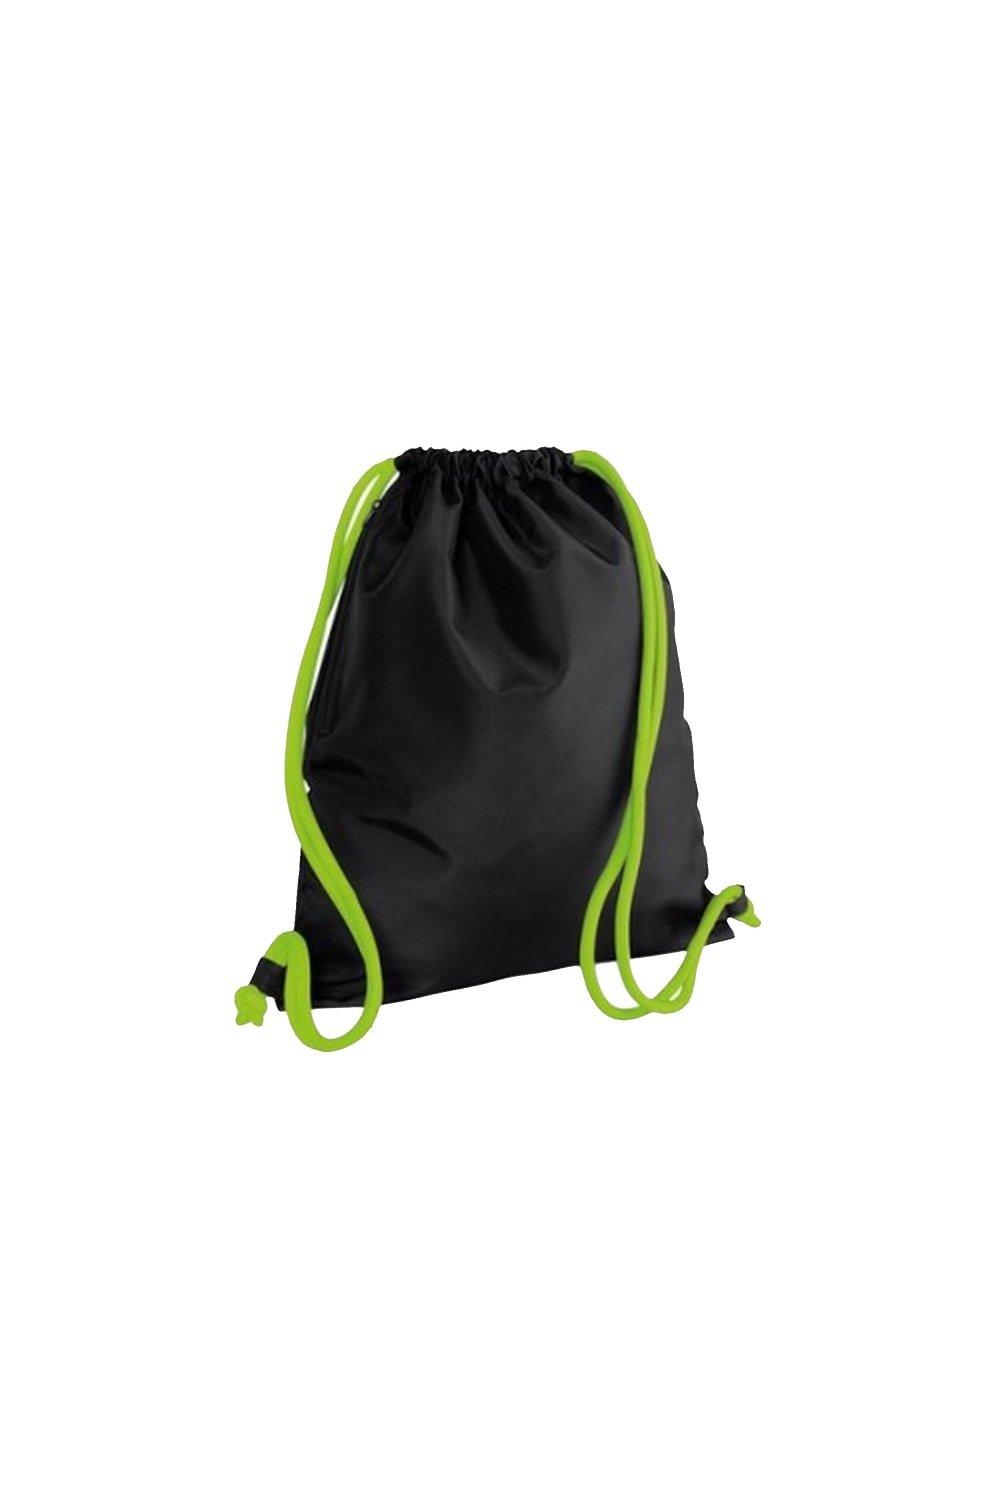 Сумка Icon на шнурке / Gymsac Bagbase, черный сумка urban gymsac на шнурке sol s розовый